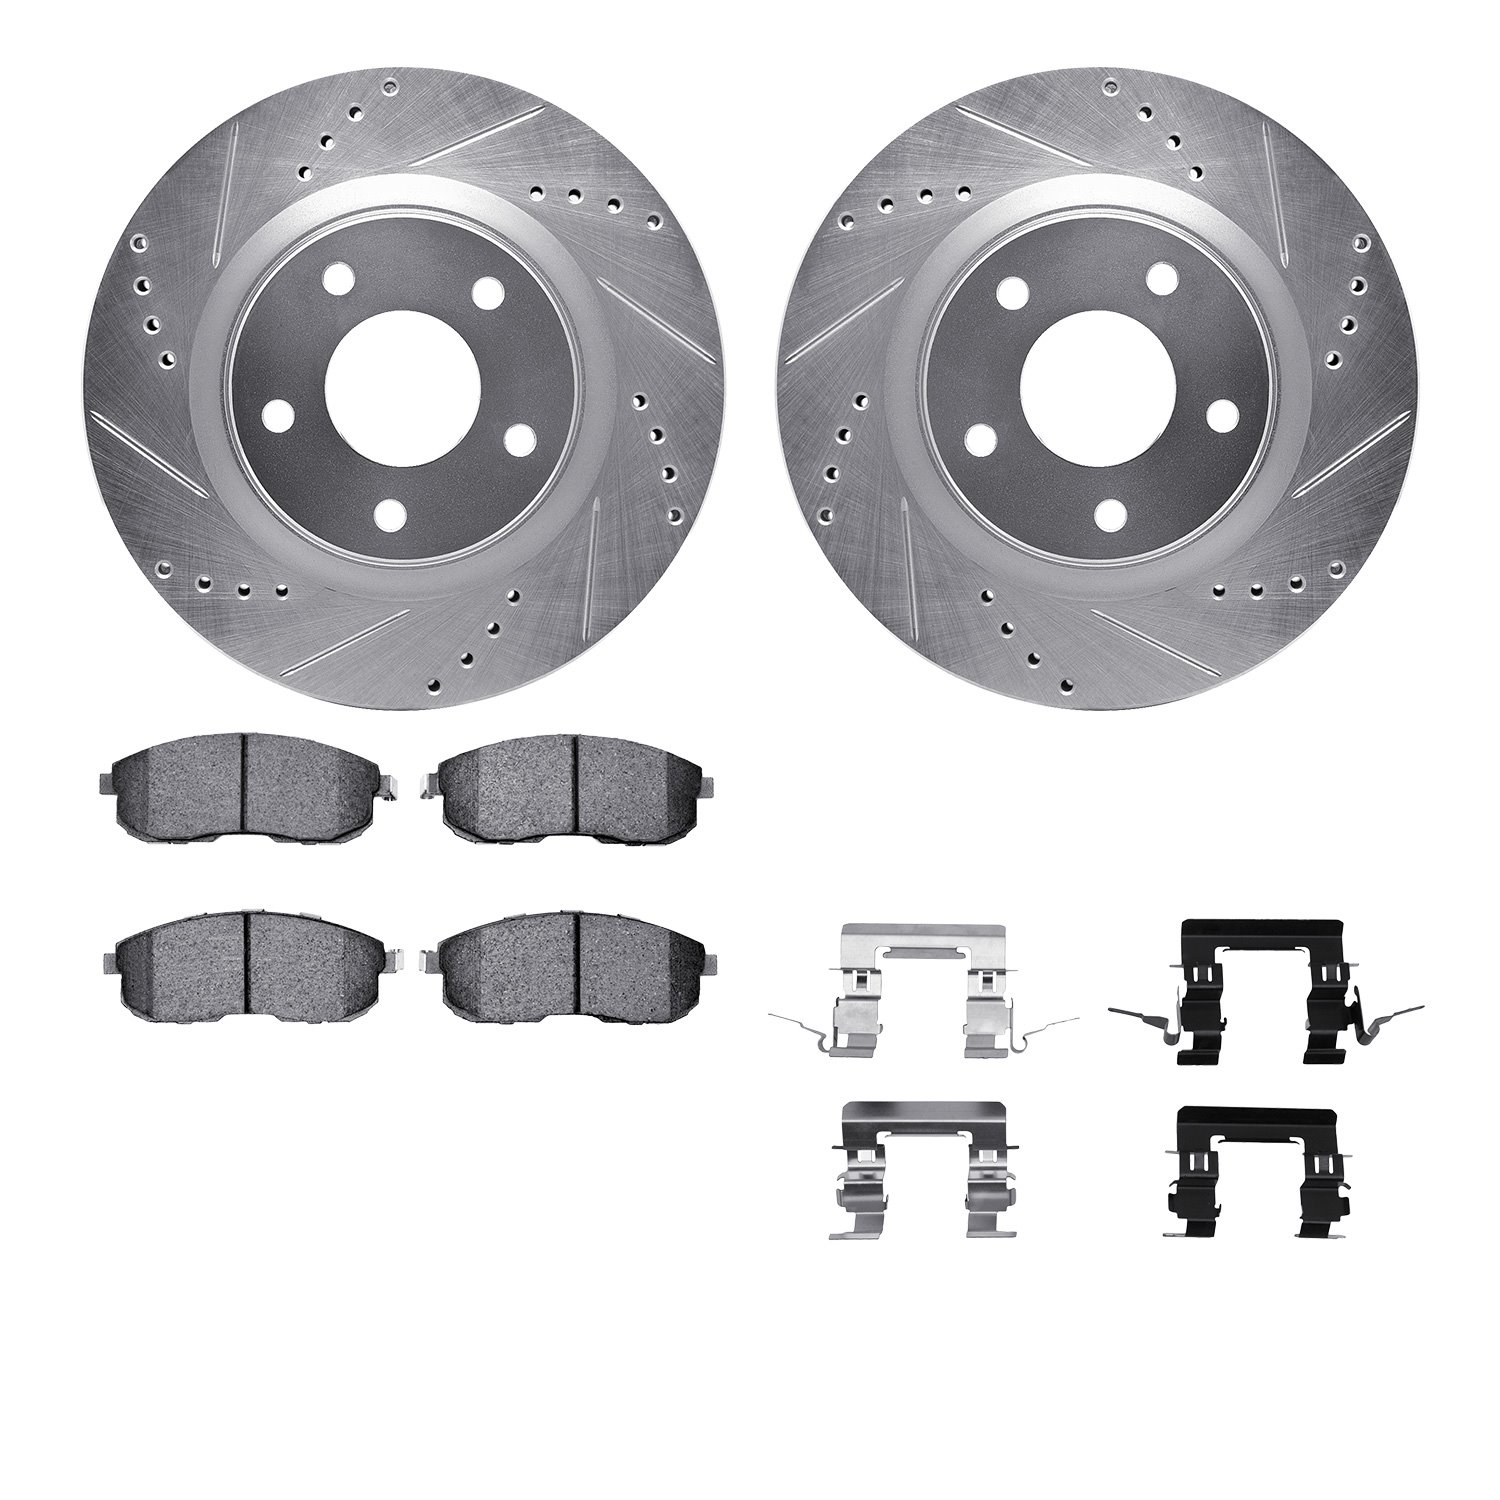 7612-67013 Drilled/Slotted Brake Rotors w/5000 Euro Ceramic Brake Pads Kit & Hardware [Silver], 2011-2019 Infiniti/Nissan, Posit